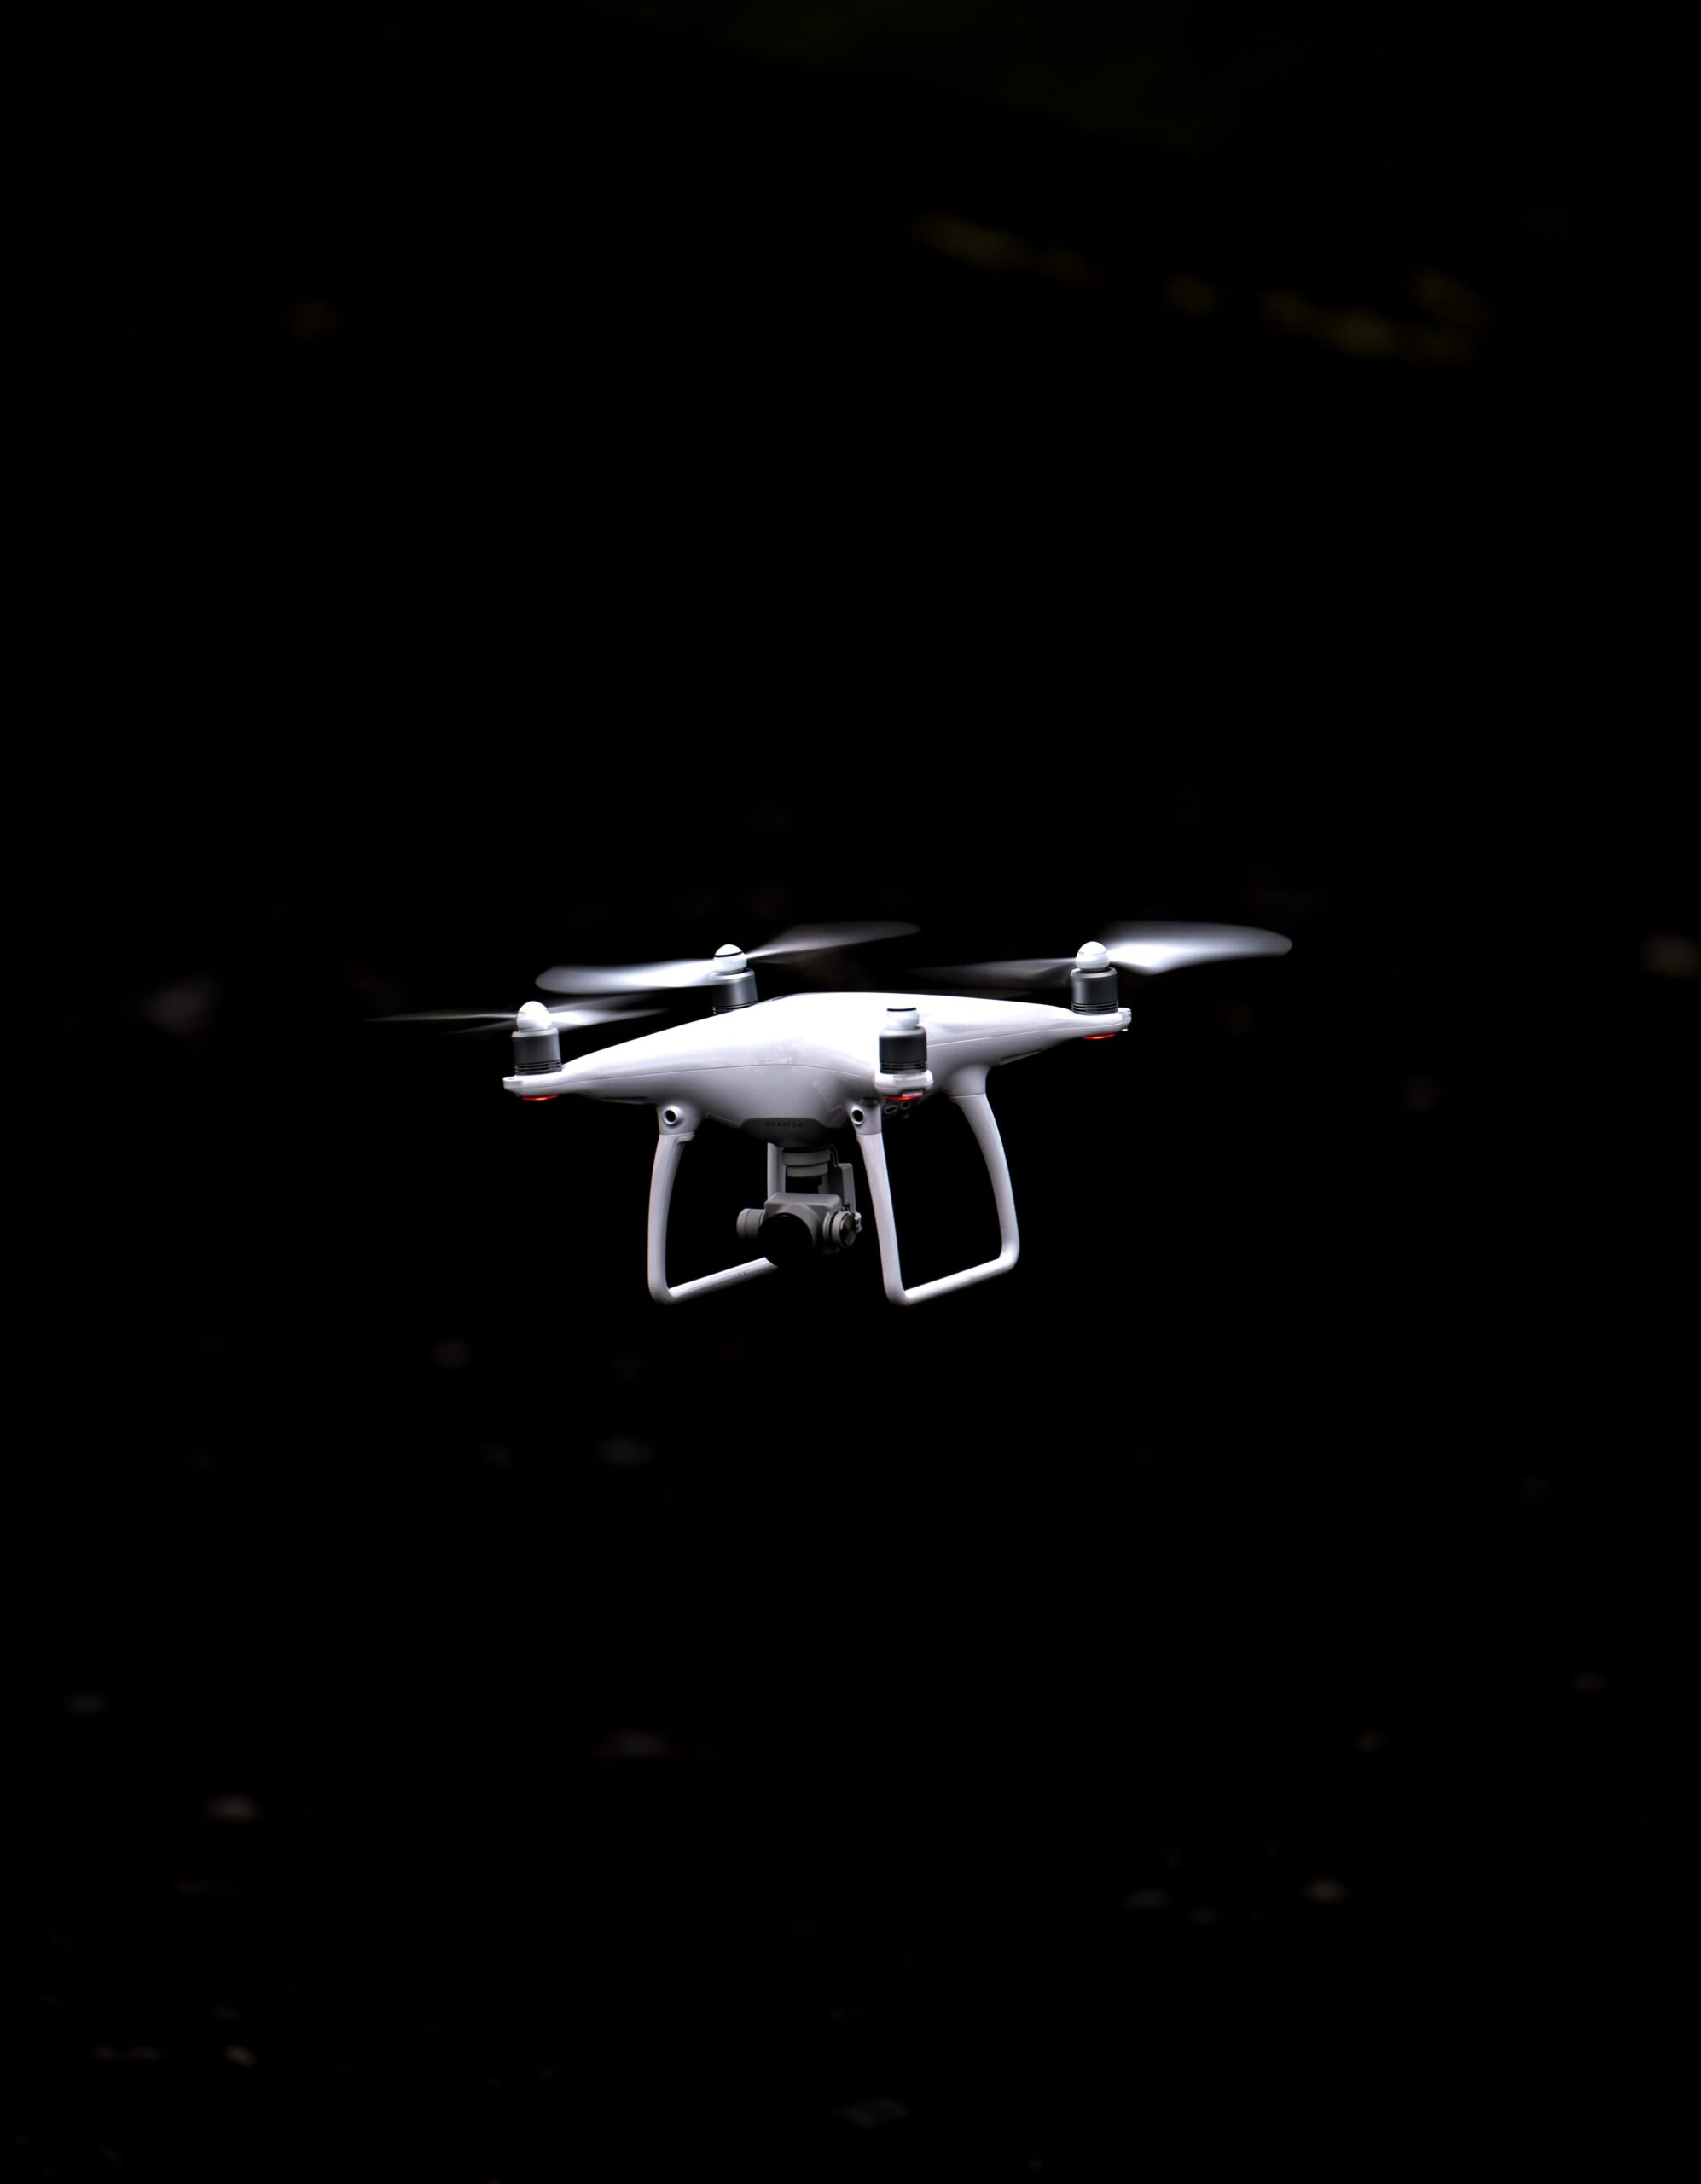 Fliegen mit einer Drohne - Was sollte man beachten? urbanuncut Magazin